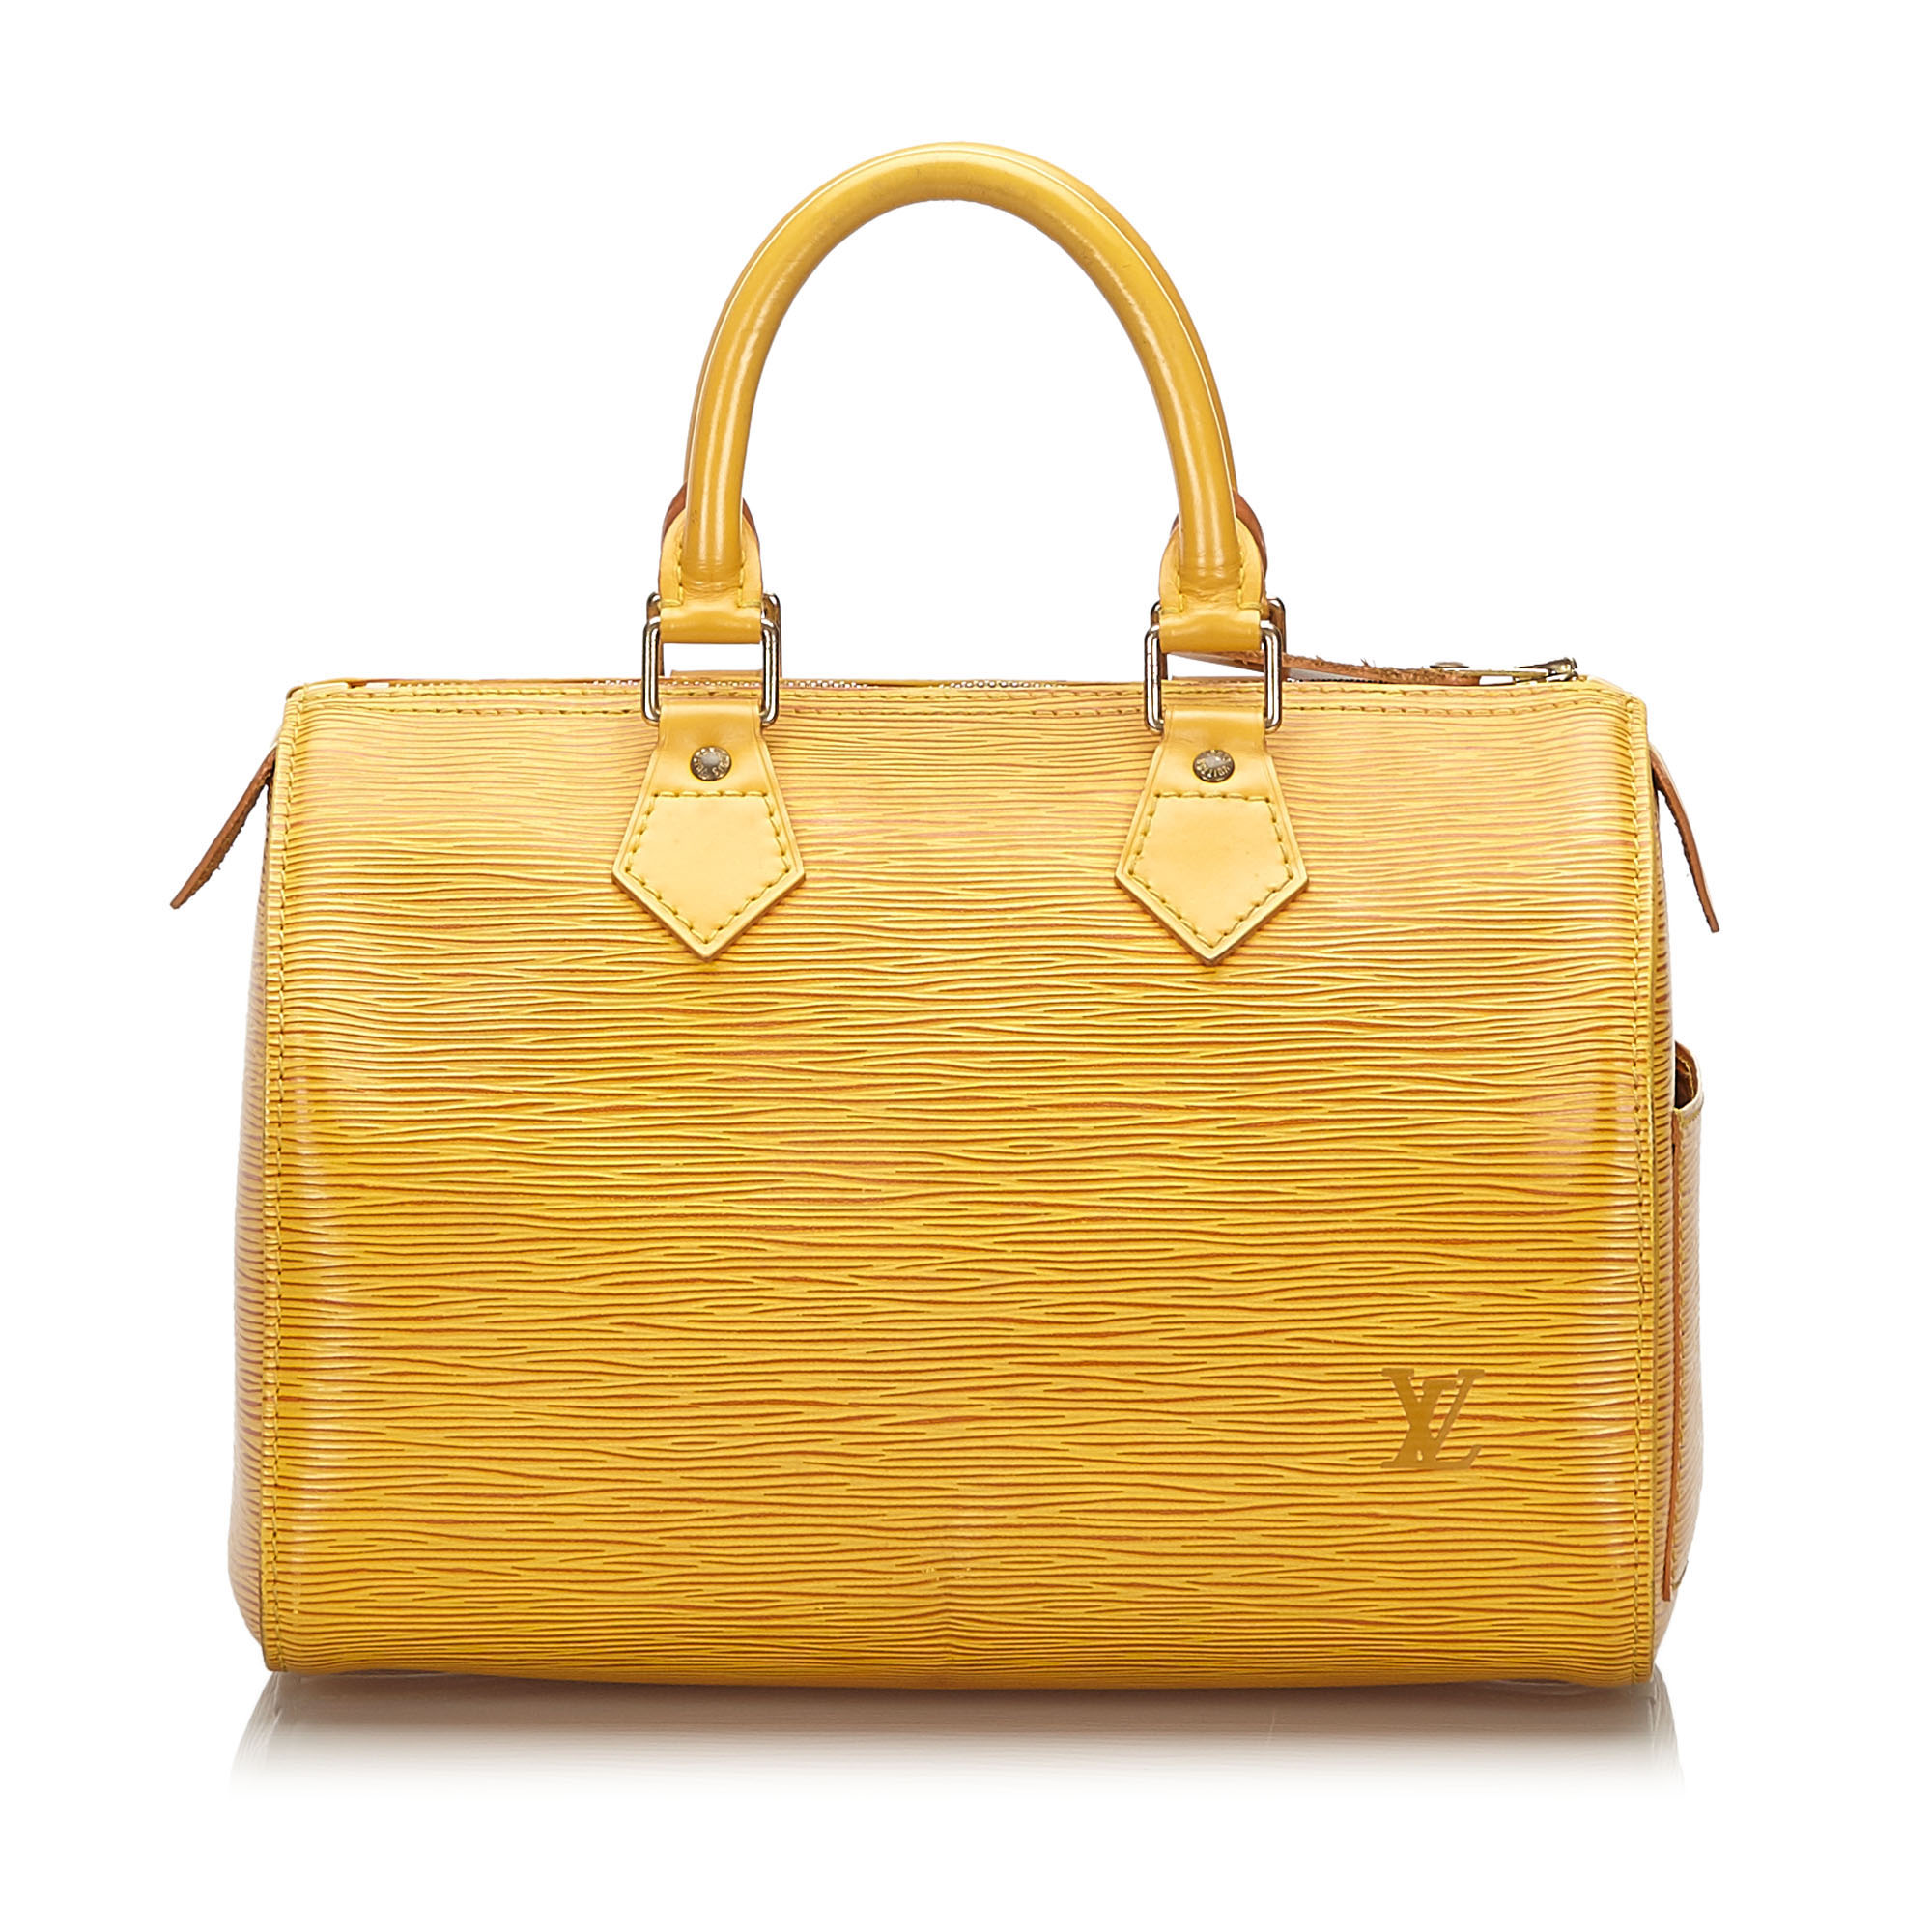 Louis Vuitton Epi Speedy 25 Boston Bag, the Speedy 25 features an epi leather body, rolled